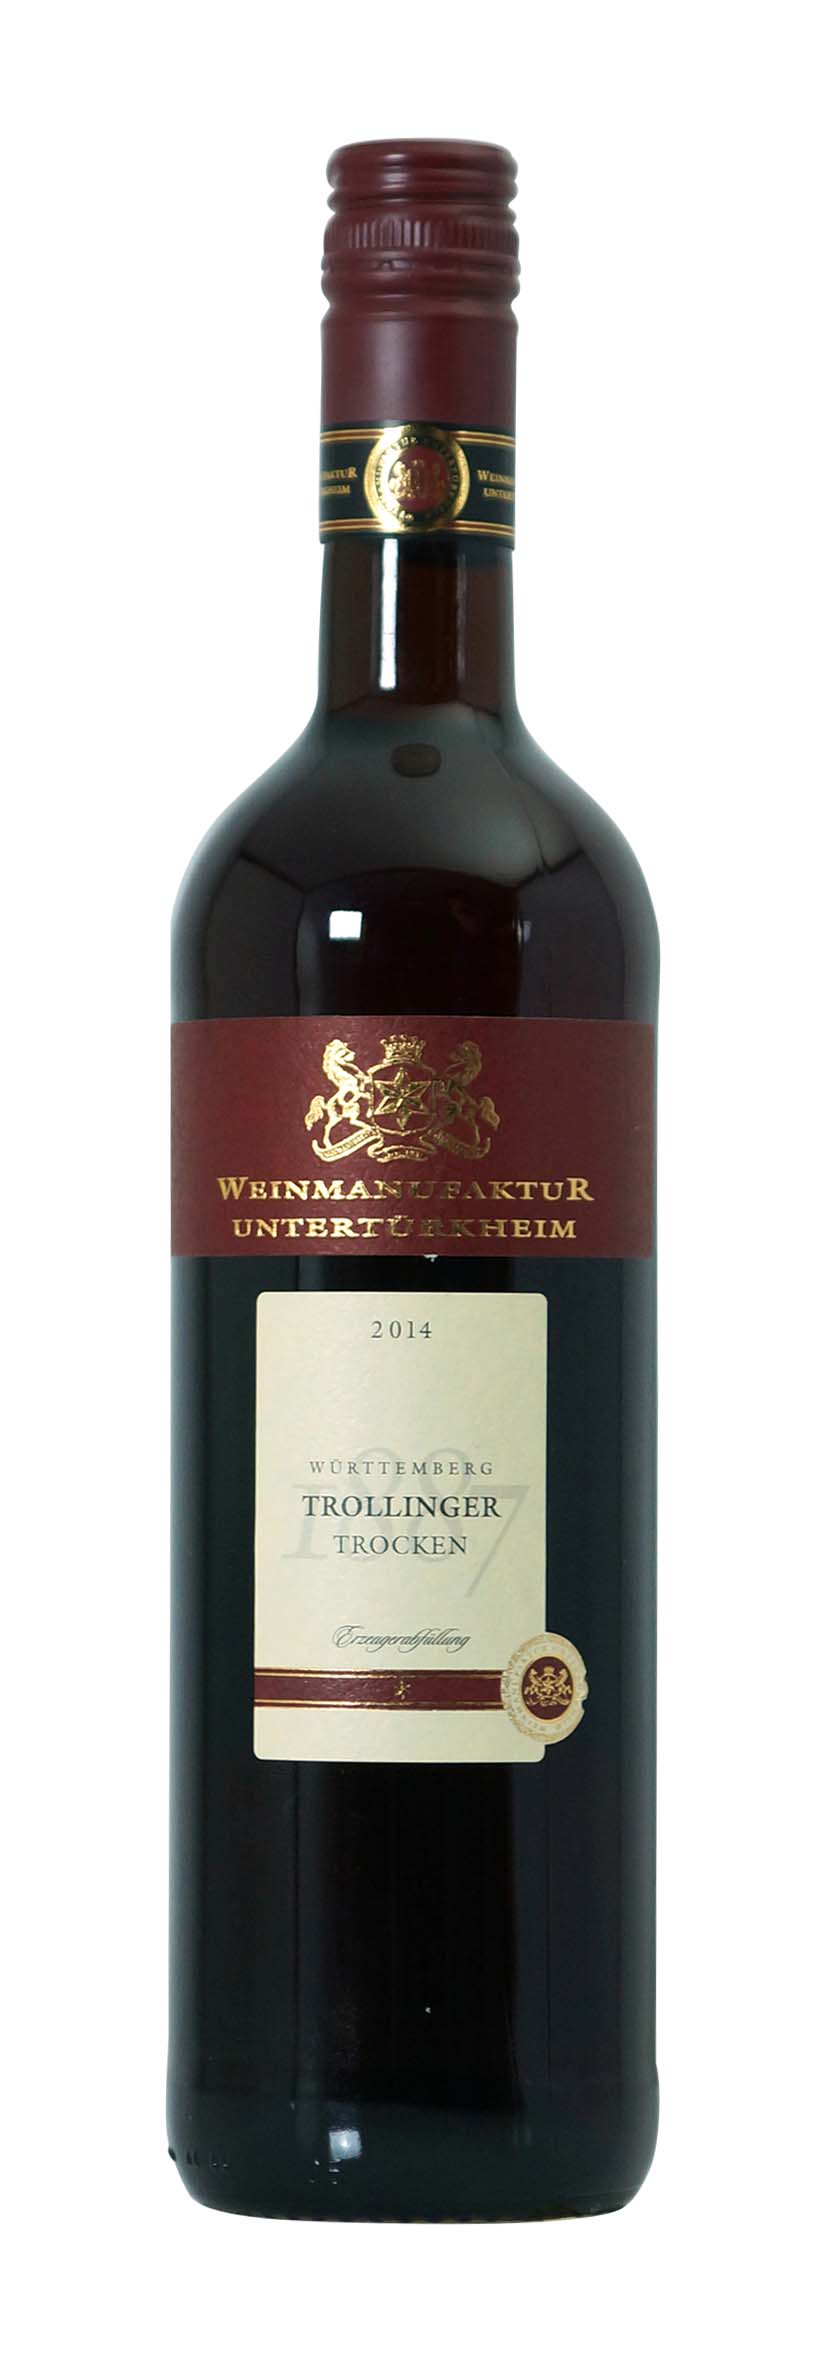 Württemberg Trollinger Qualitätswein trocken 2014